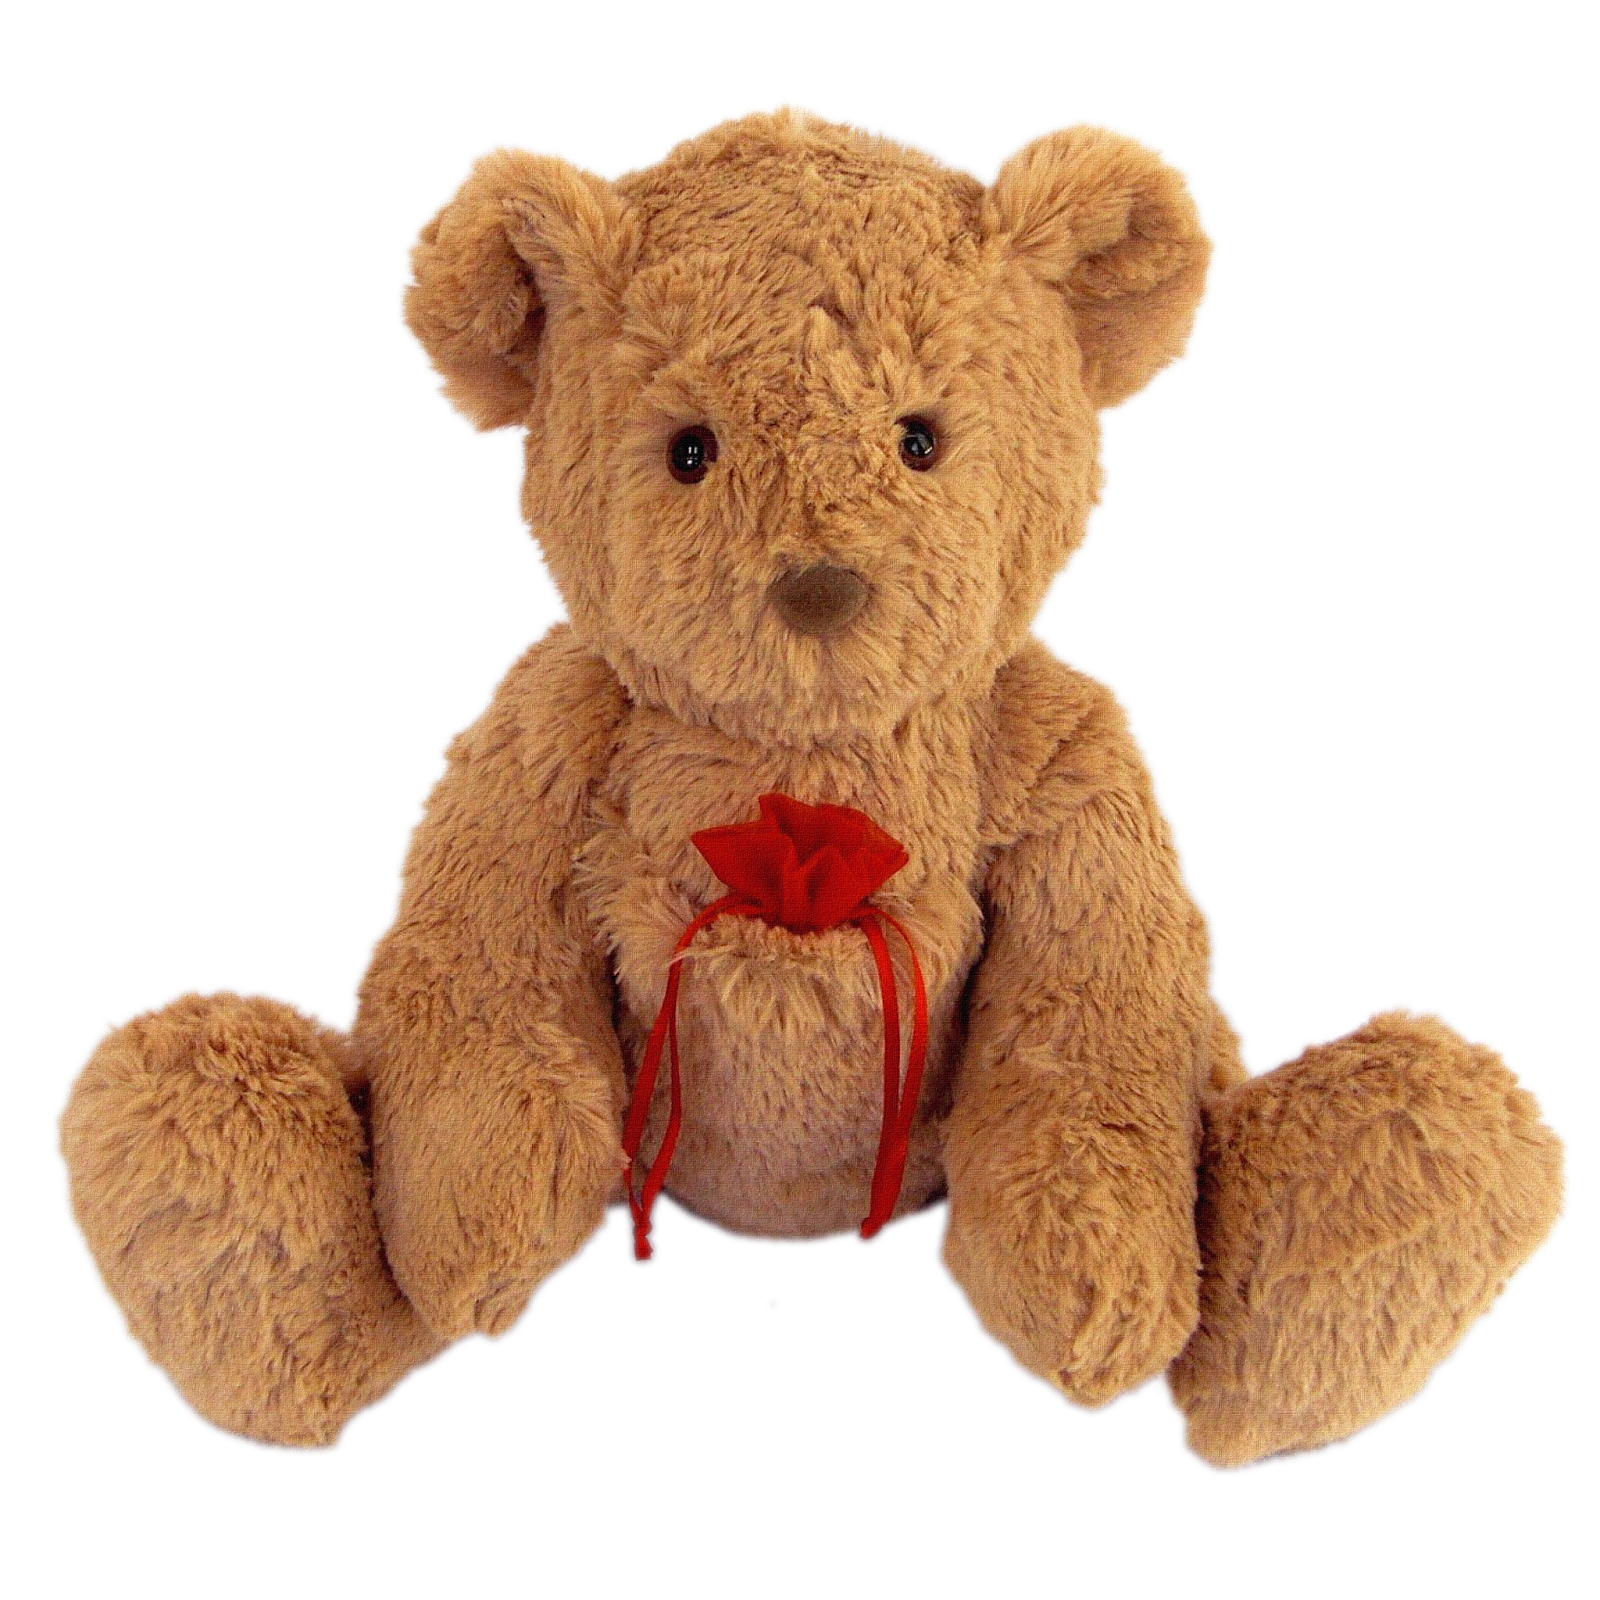 Плюшевый медведь по английски. Плюшевые игрушки. Плюшевый медведь. Медведь Тедди игрушка. Плюшевый мишка небольшой.